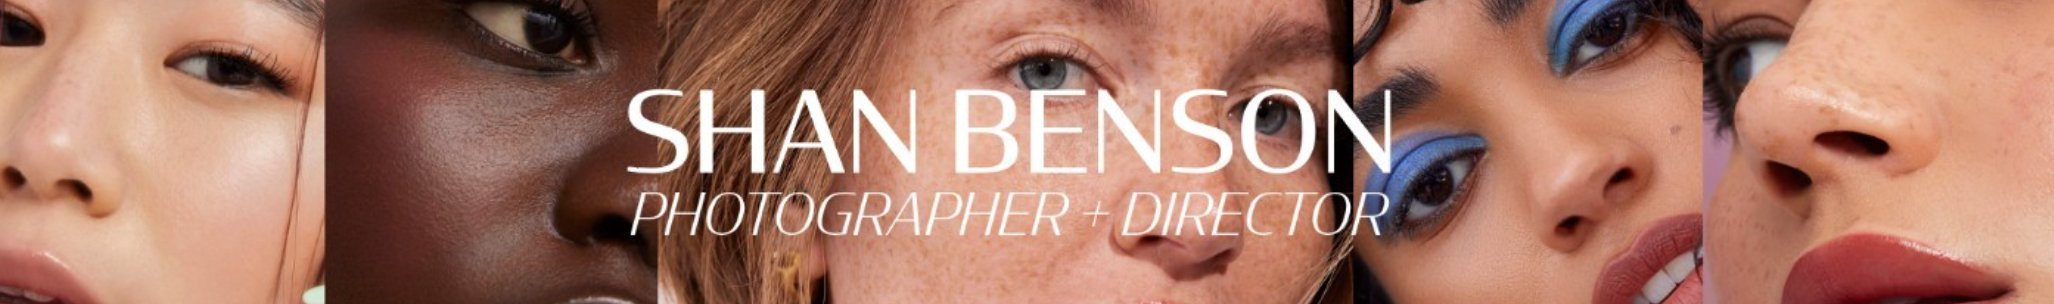 Profil-Banner von Shan Benson